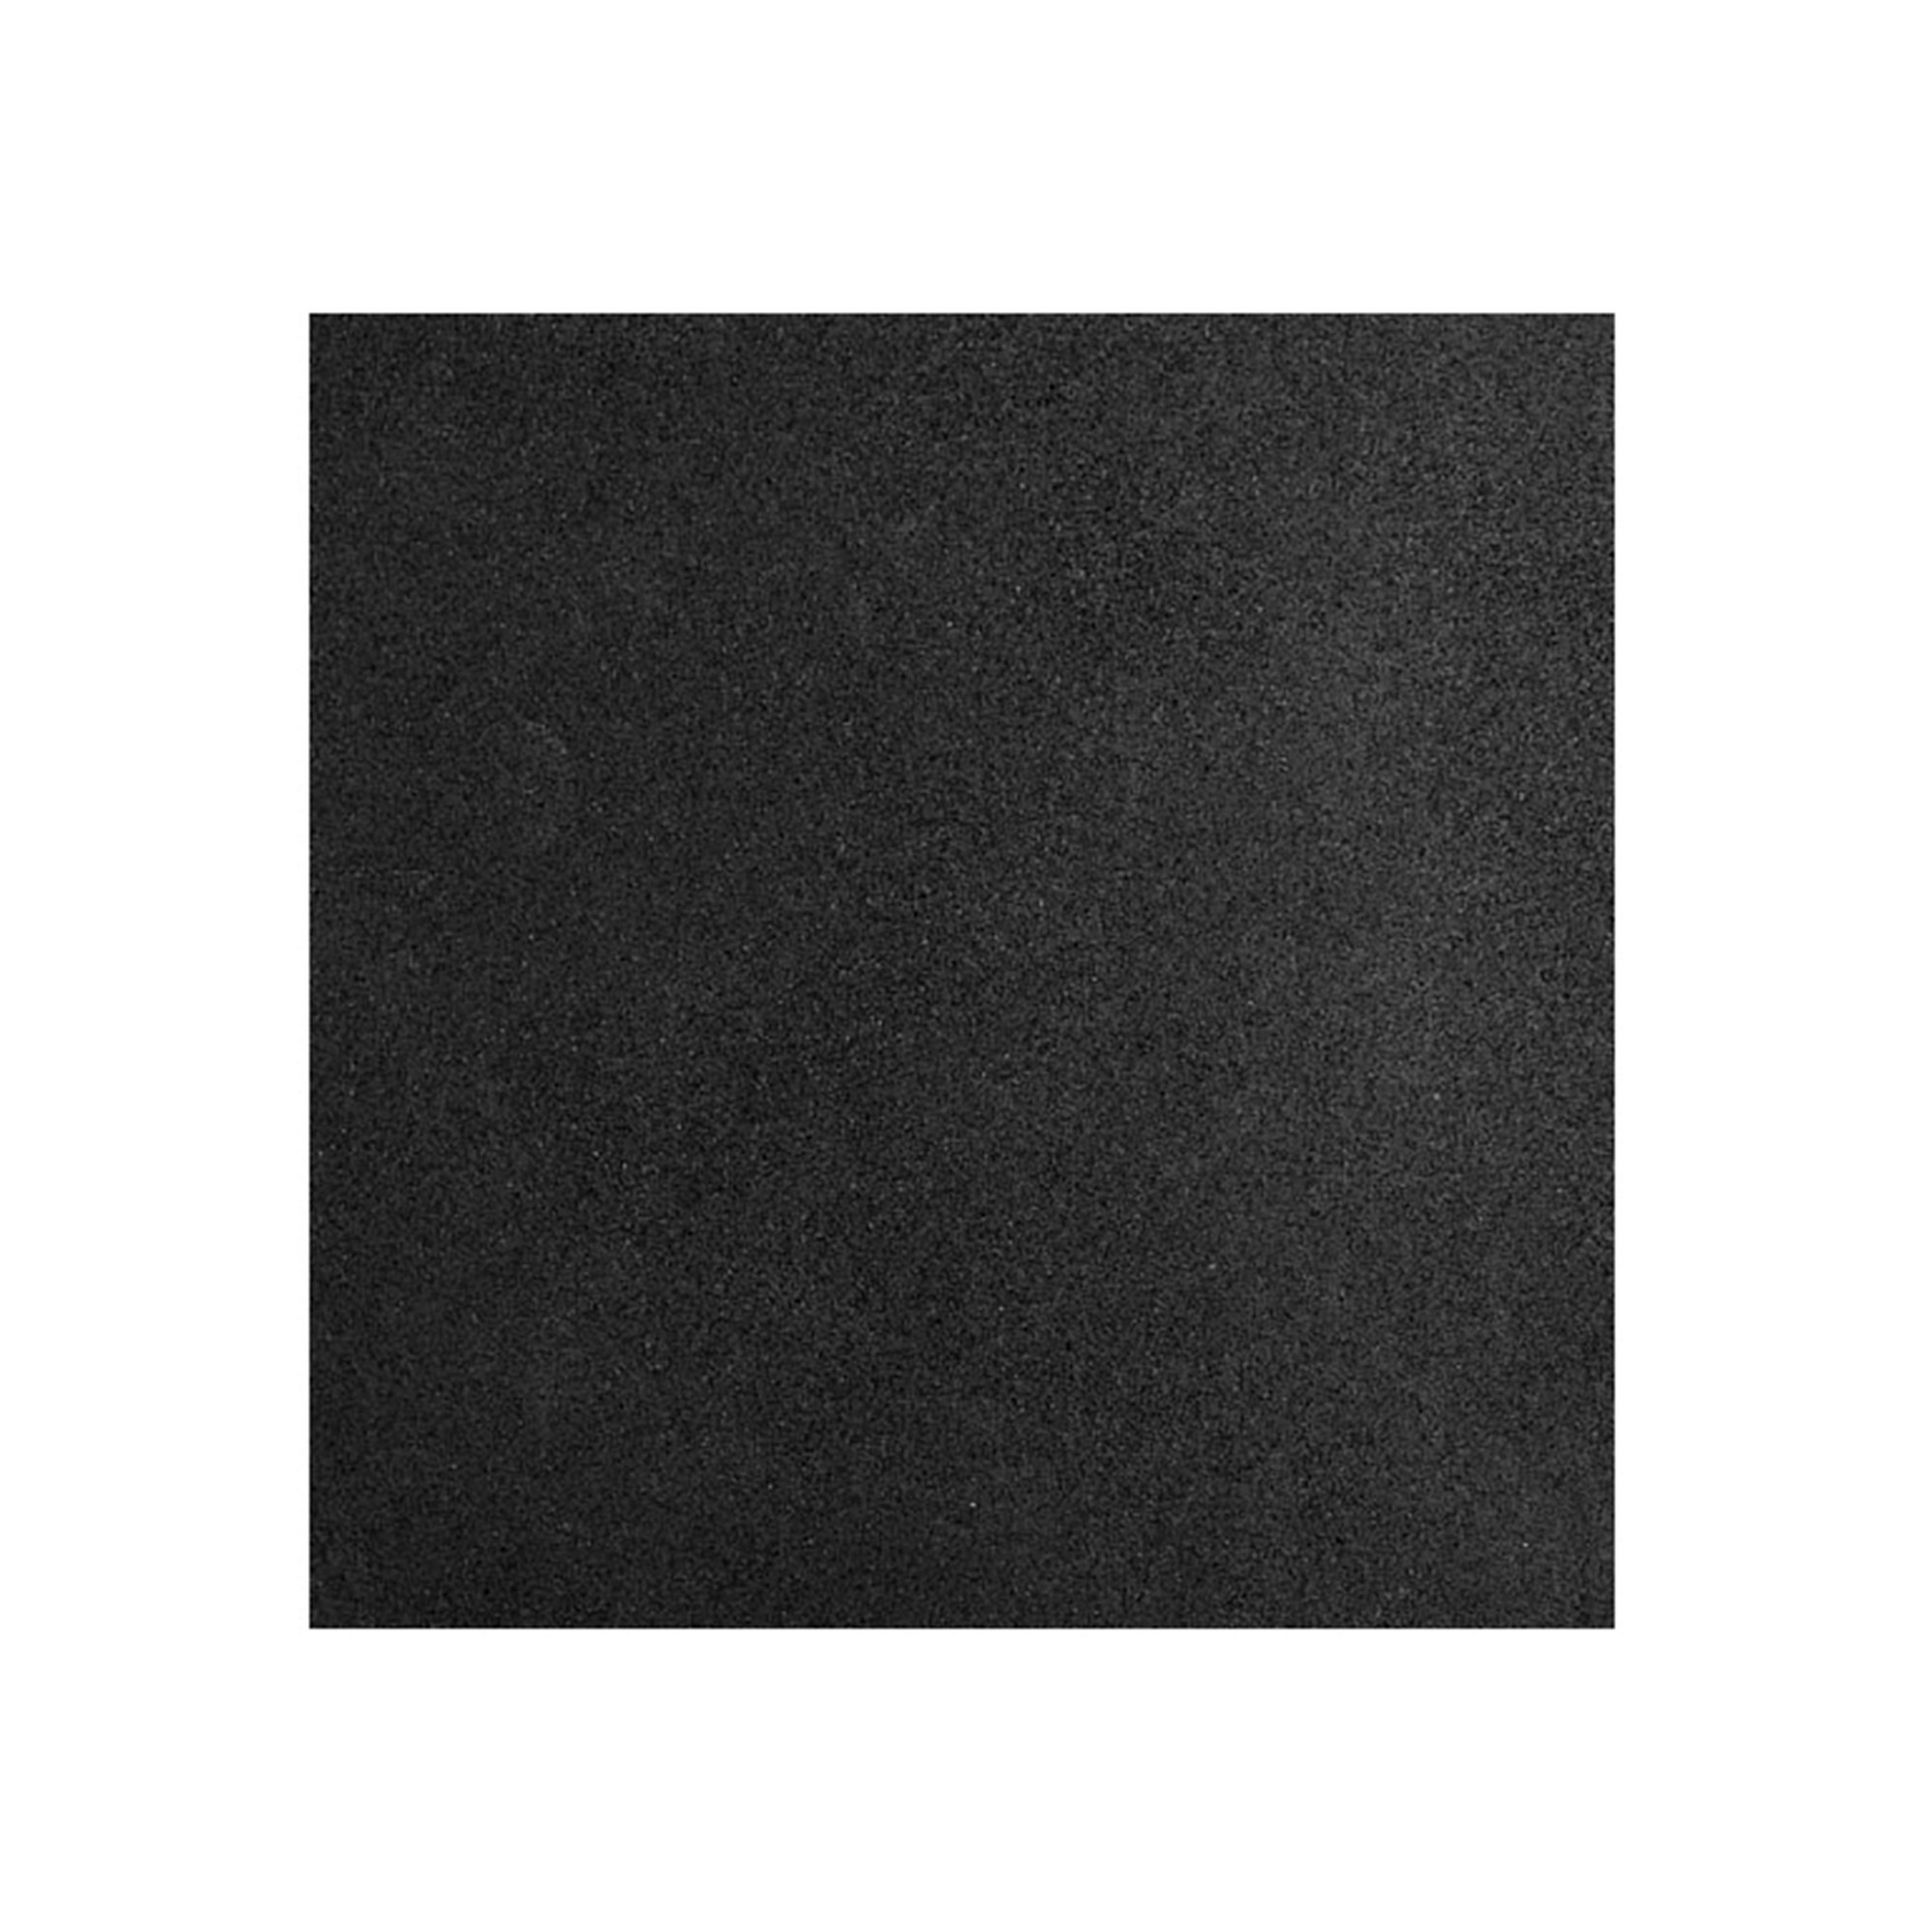 Коврик резиновый Profi-Fit черный,1000x1000x40 мм 2000_2000